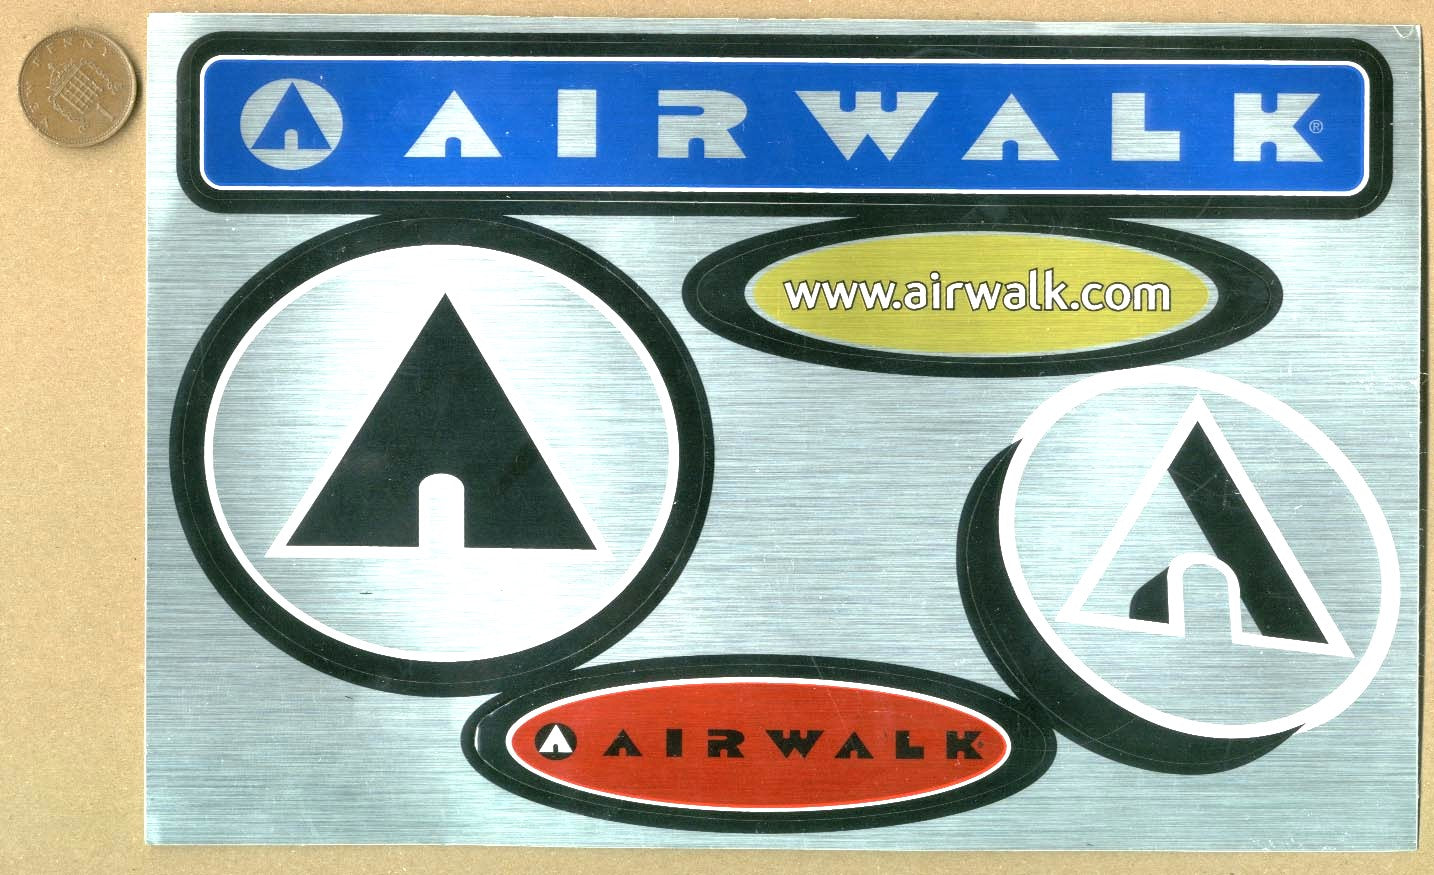 Airwalk Skateboard Sticker